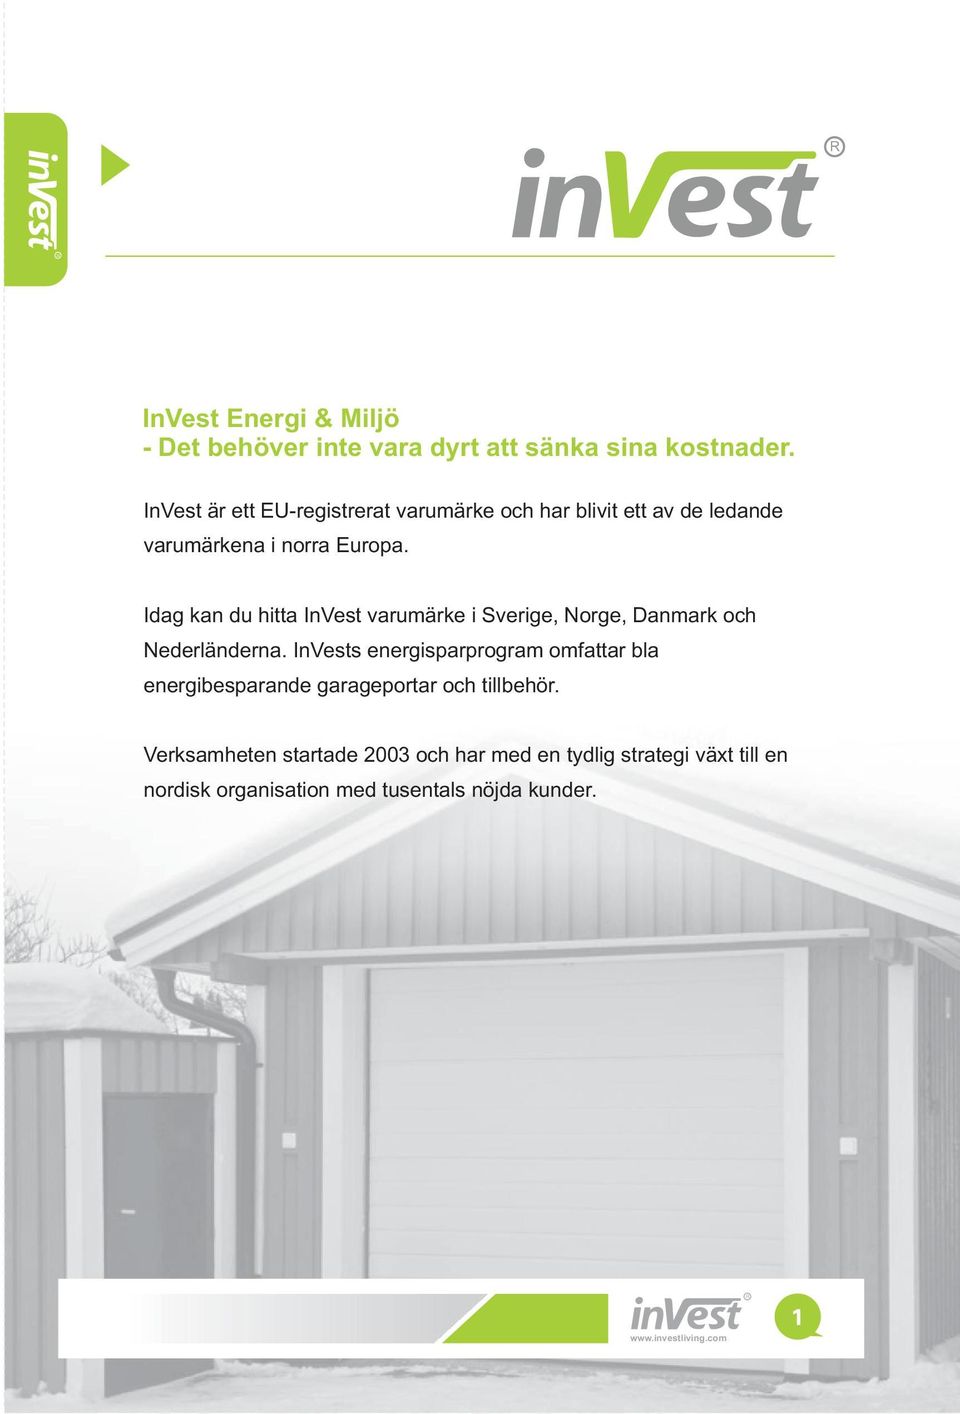 Idag kan du hitta InVest varumärke i Sverige, Norge, Danmark och Nederländerna.